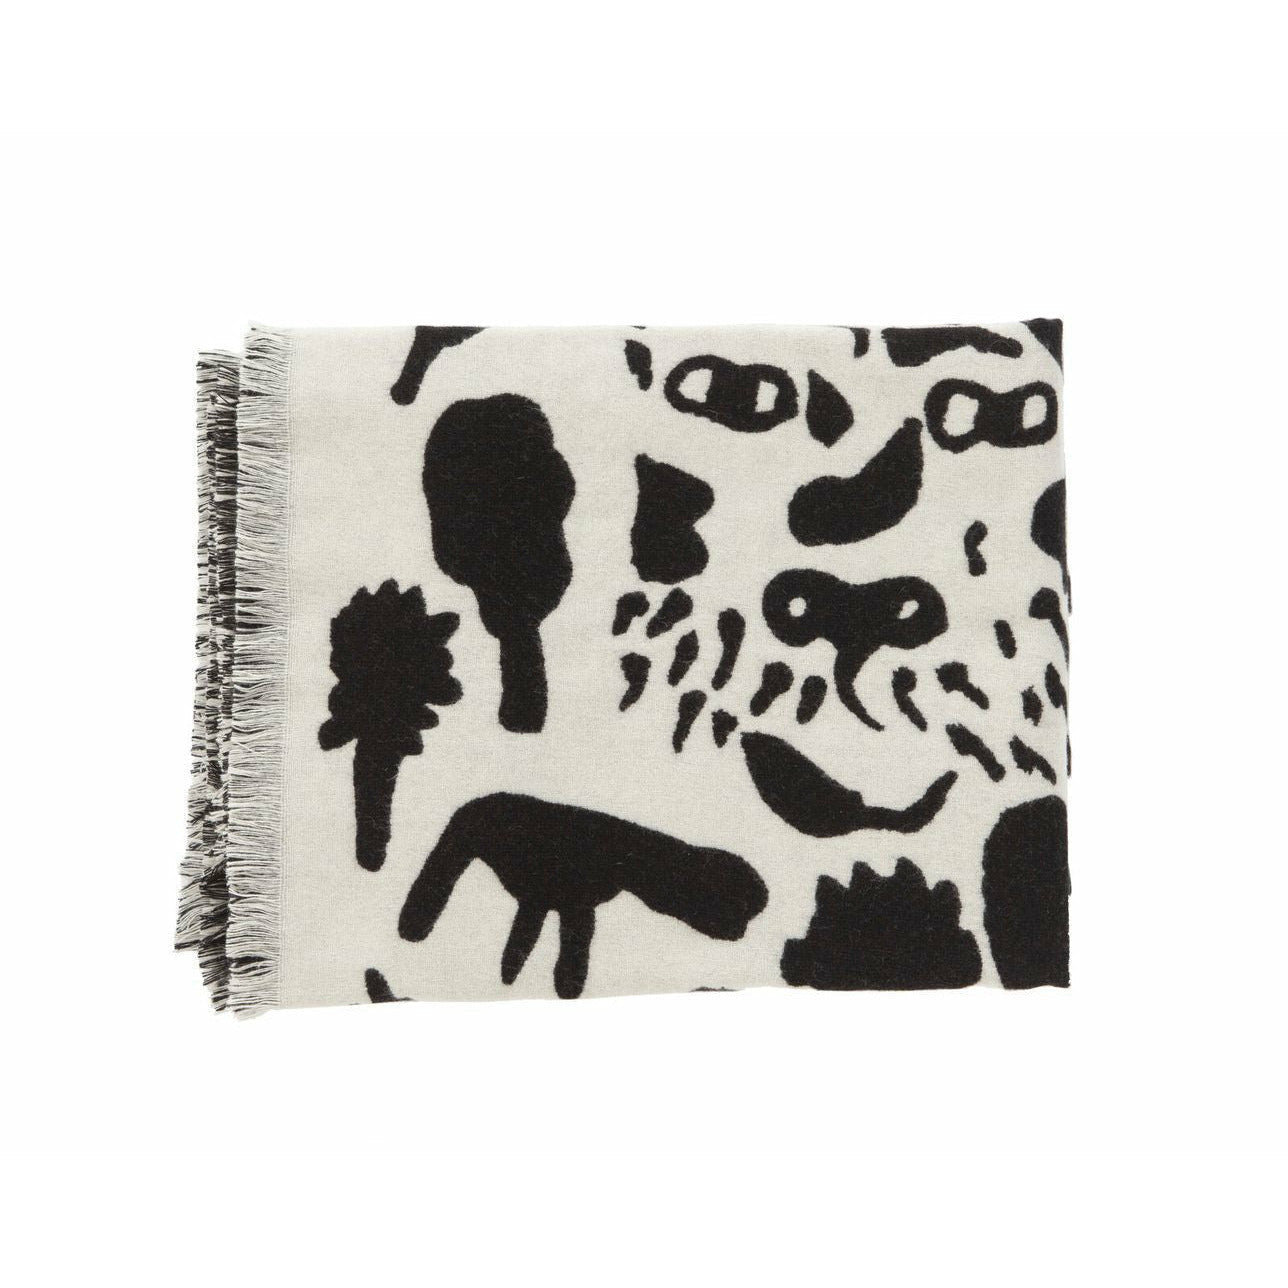 Iittala Oiva Toikka Blanket Cheetah Black, 180x130cm